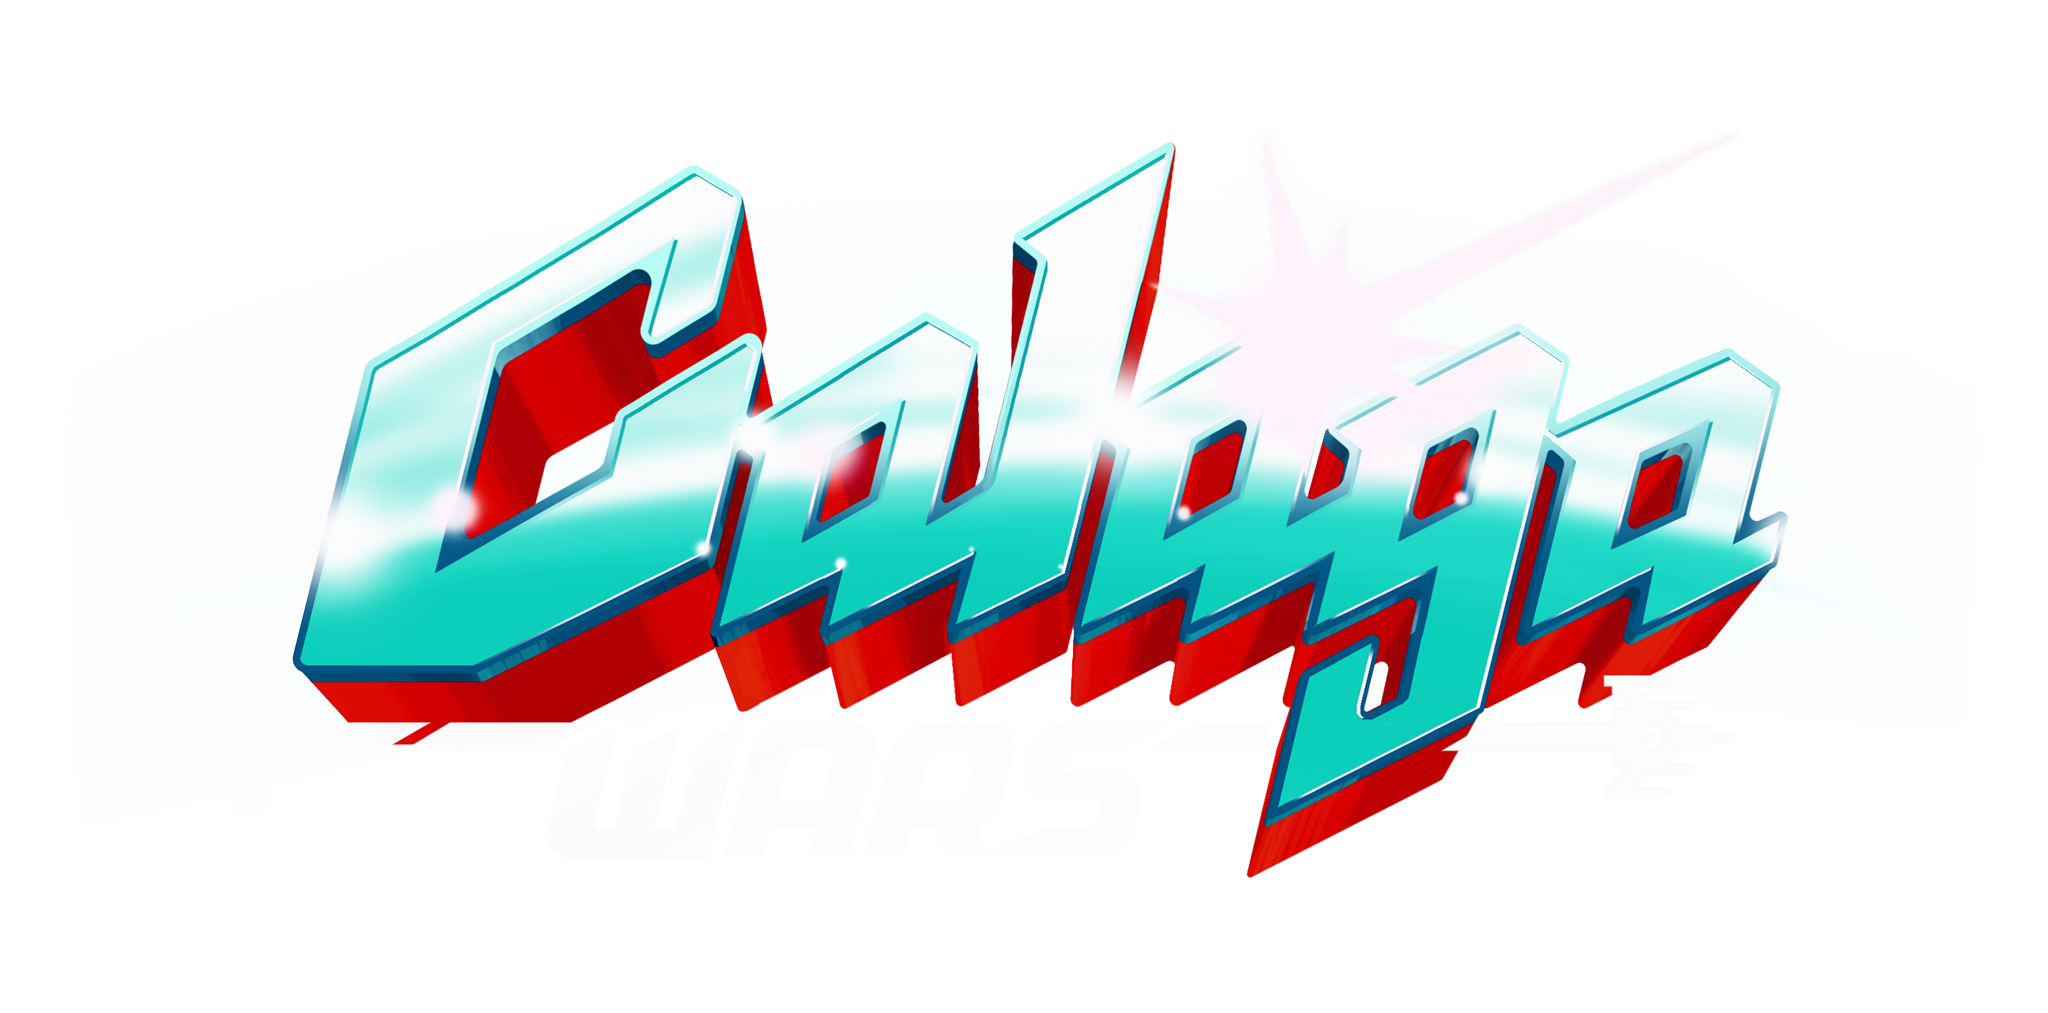 Galaga Wars